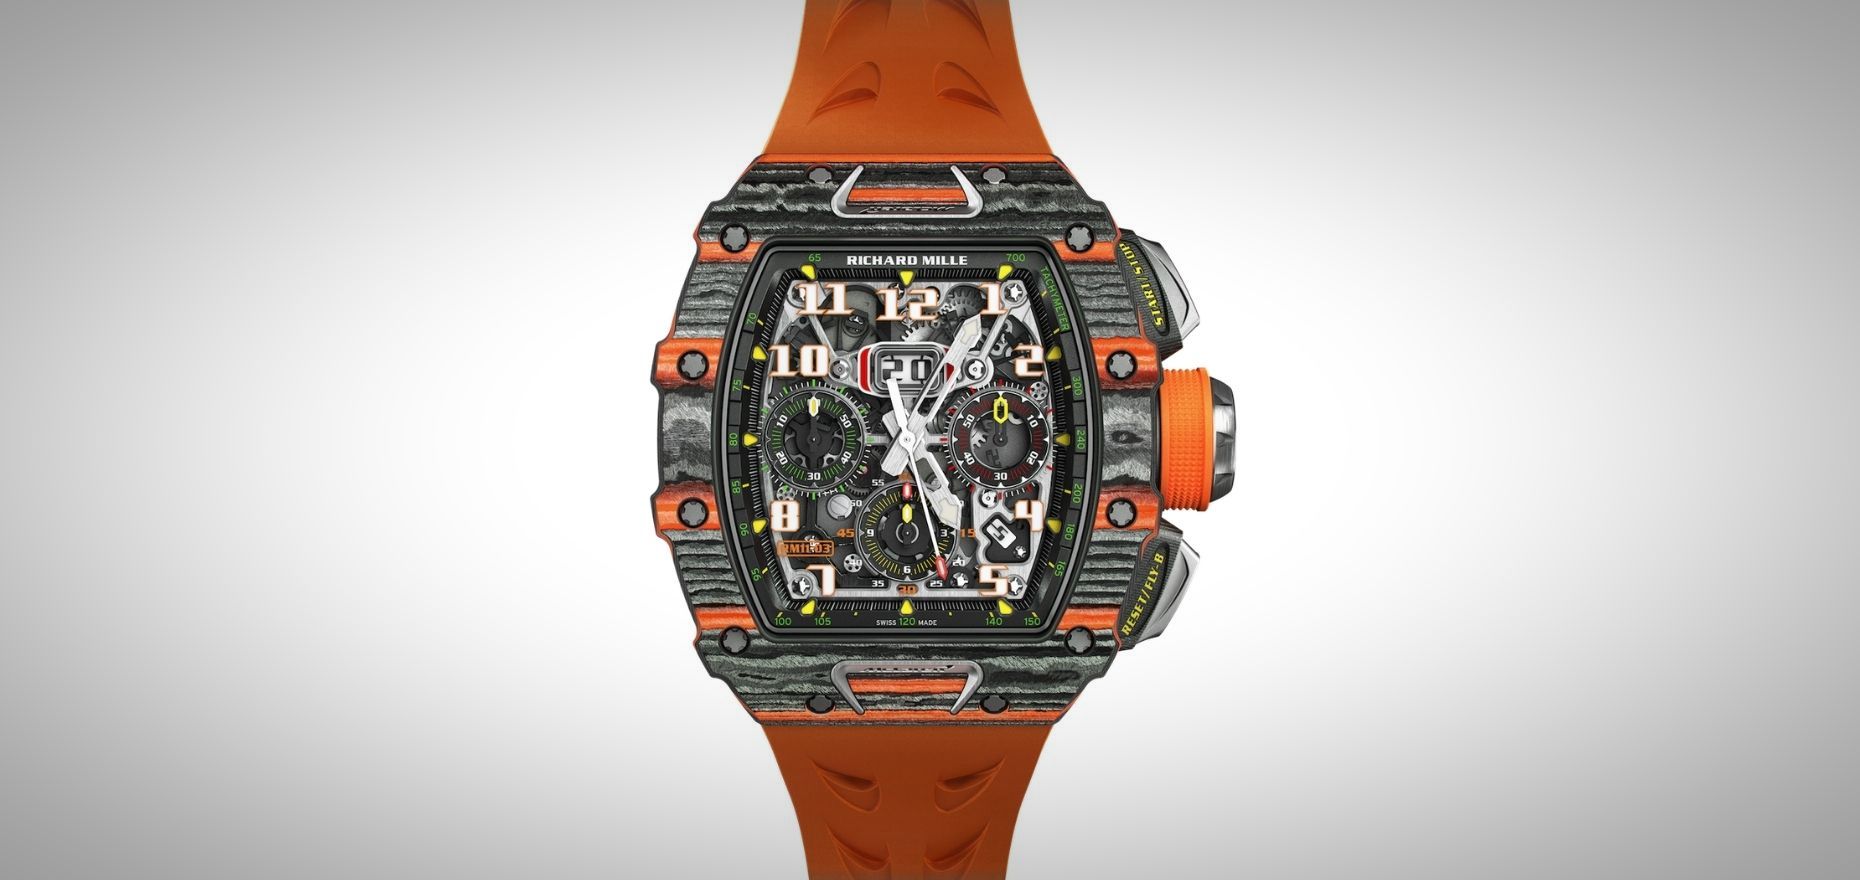 Uhren von Richard Mille: Innovative Hochleistungs-Sportuhren oder bloße Statussymbole für Millionäre?